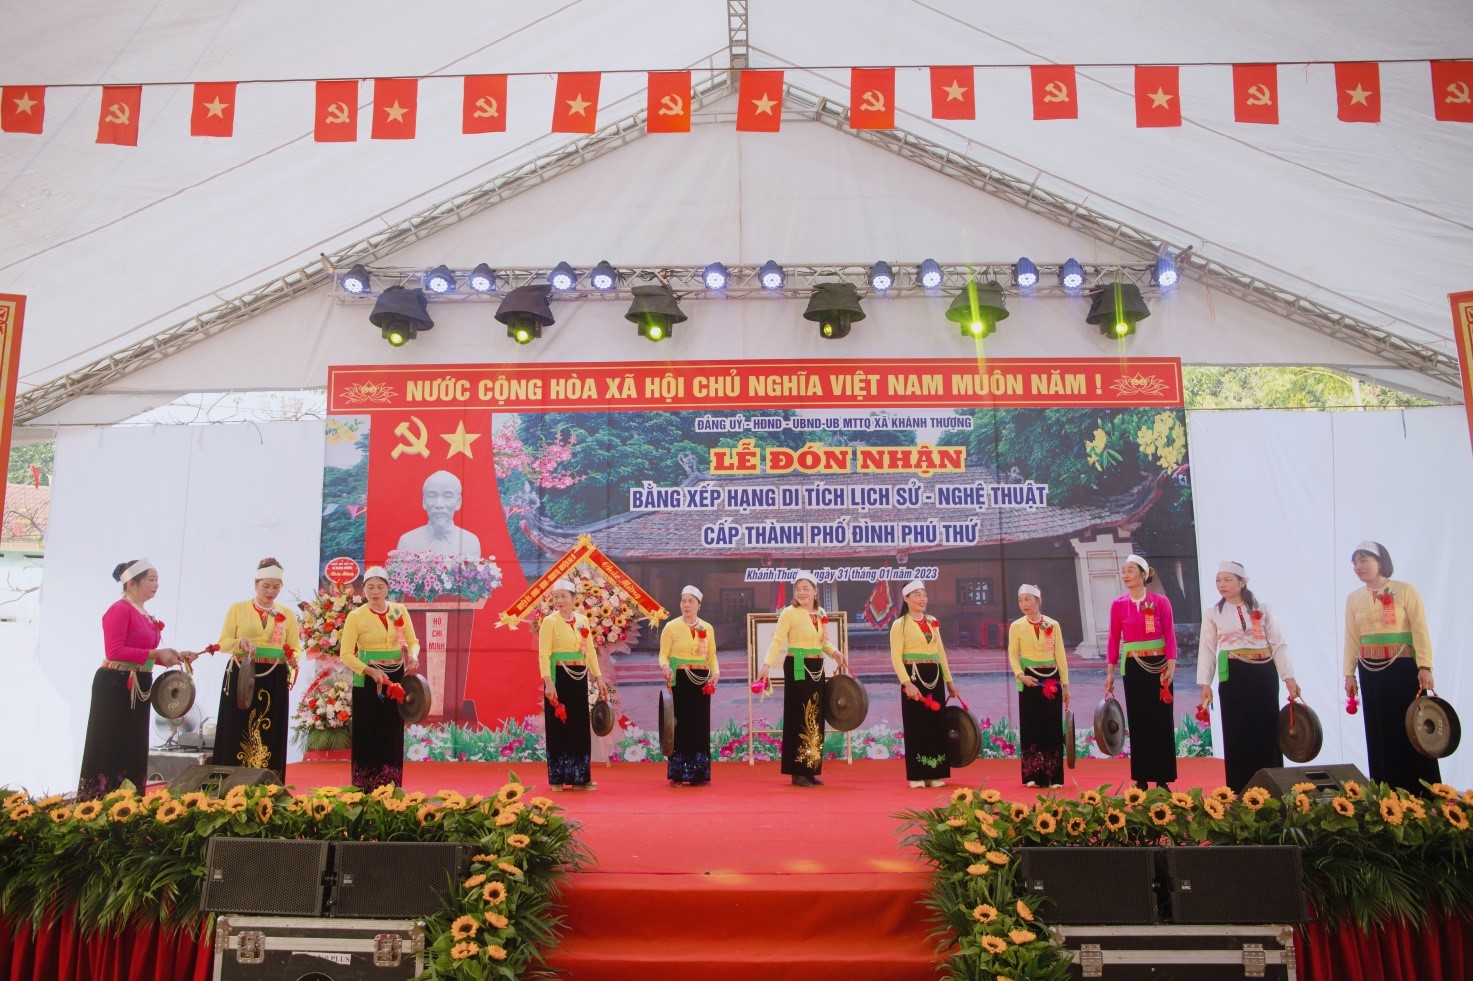 Thôn Phú Thứ long trọng tổ chức lễ đón nhận bằng xếp hạng di tích lịch sử